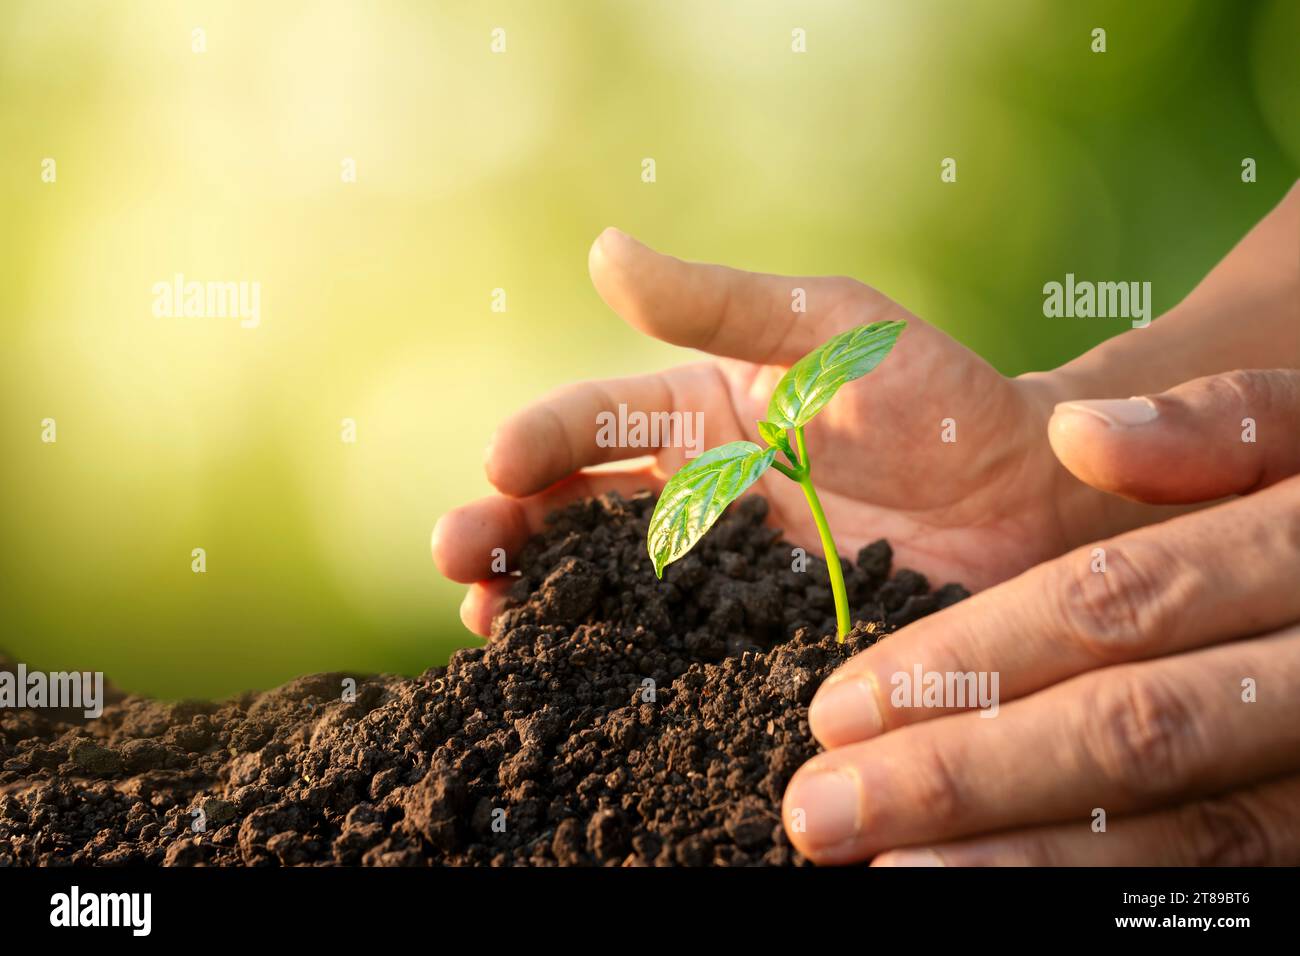 les mains des hommes cultivent des semis cultivant des arbres germés et nourrissant des arbres poussant sur un sol fertile pour un avenir plus vert. Banque D'Images